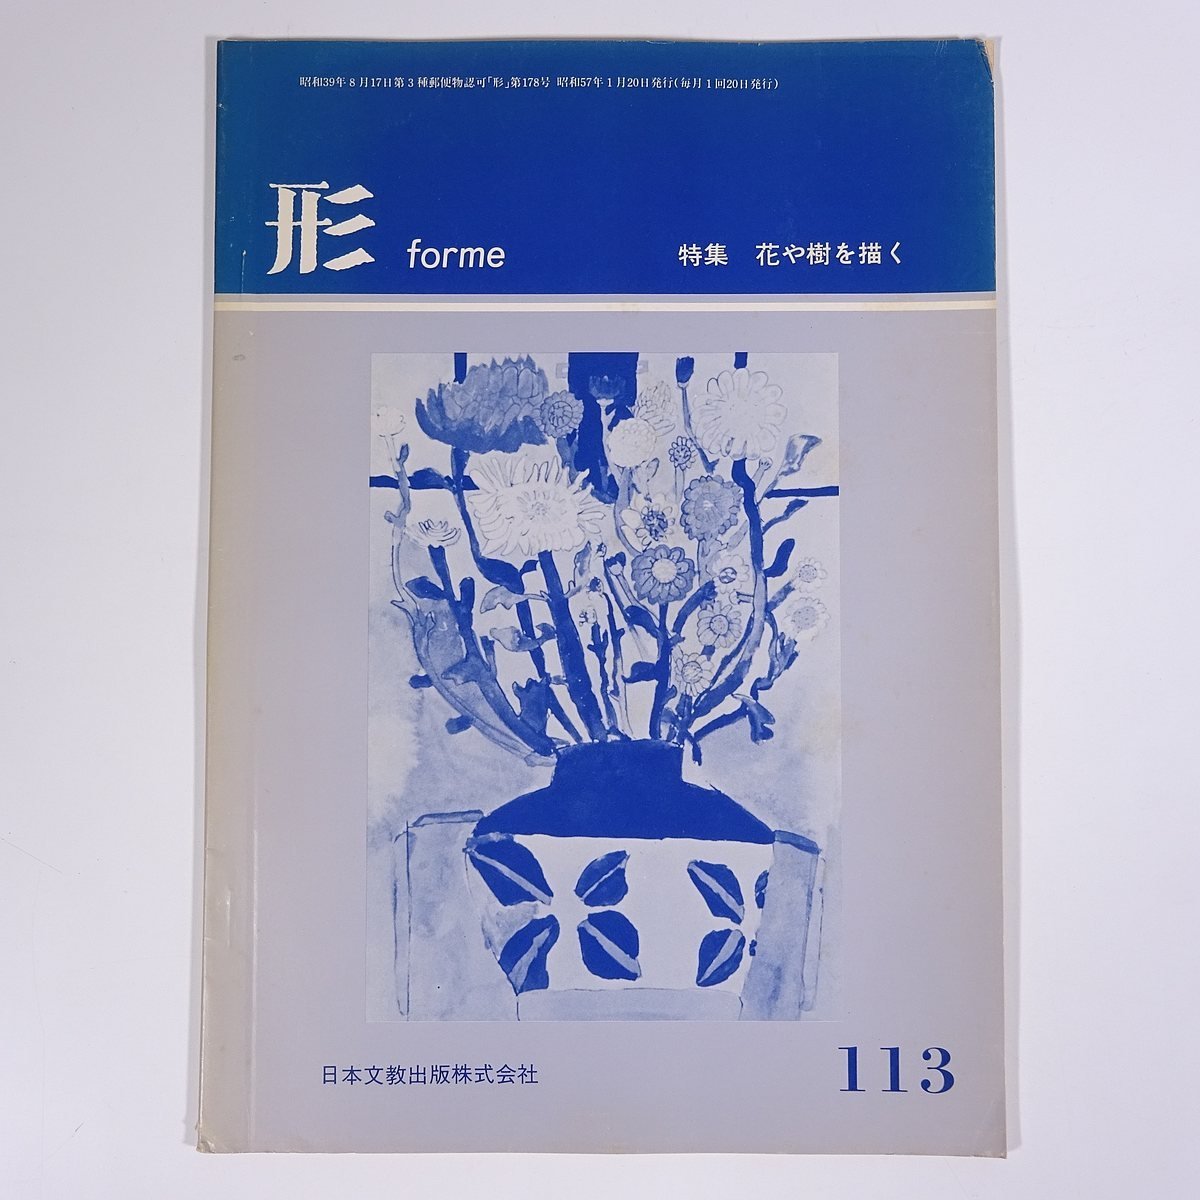 Formulaire Vol.113 1982/1 Nippon Bunkyo Publishing Co., Ltd. Magazine Éducation Art Beaux-arts Peinture Artisanat Artisanat Particularité : Dessiner des fleurs et des arbres, etc., revue, art, Divertissement, Art général